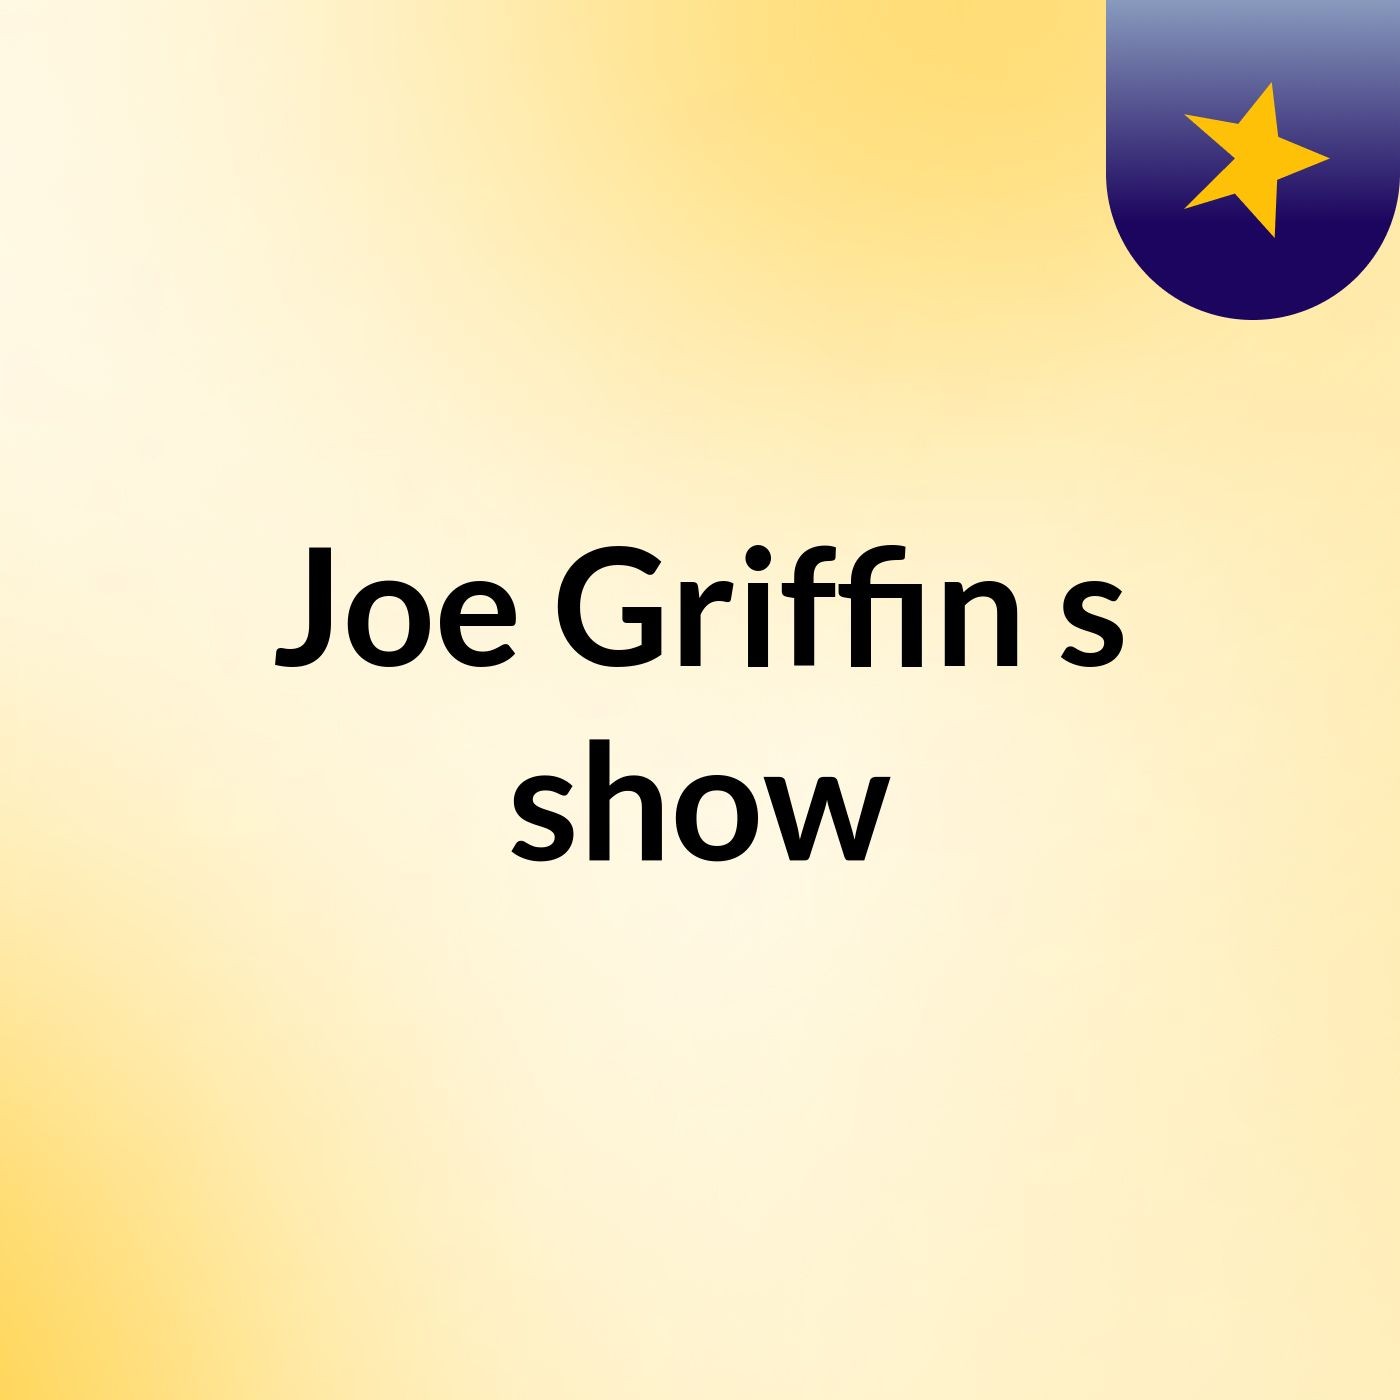 Joe Griffin's show